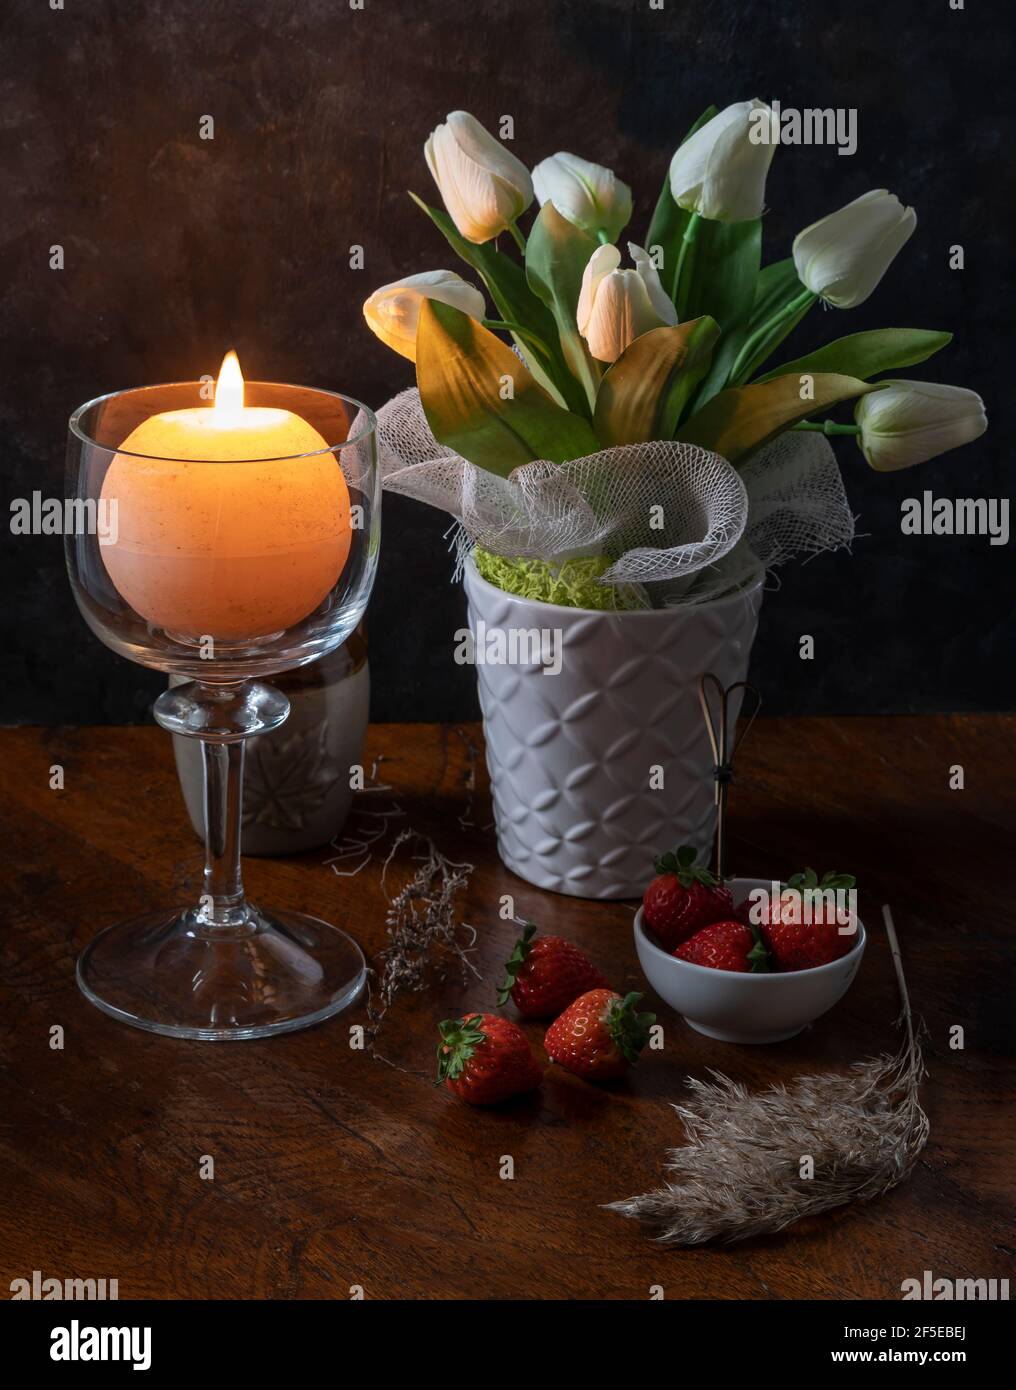 Une bougie ronde est éclairée dans un porte-bougie en verre près d'un vase  de fleurs blanches sur une table en bois avec quelques fraises et des  plantes sèches Photo Stock - Alamy